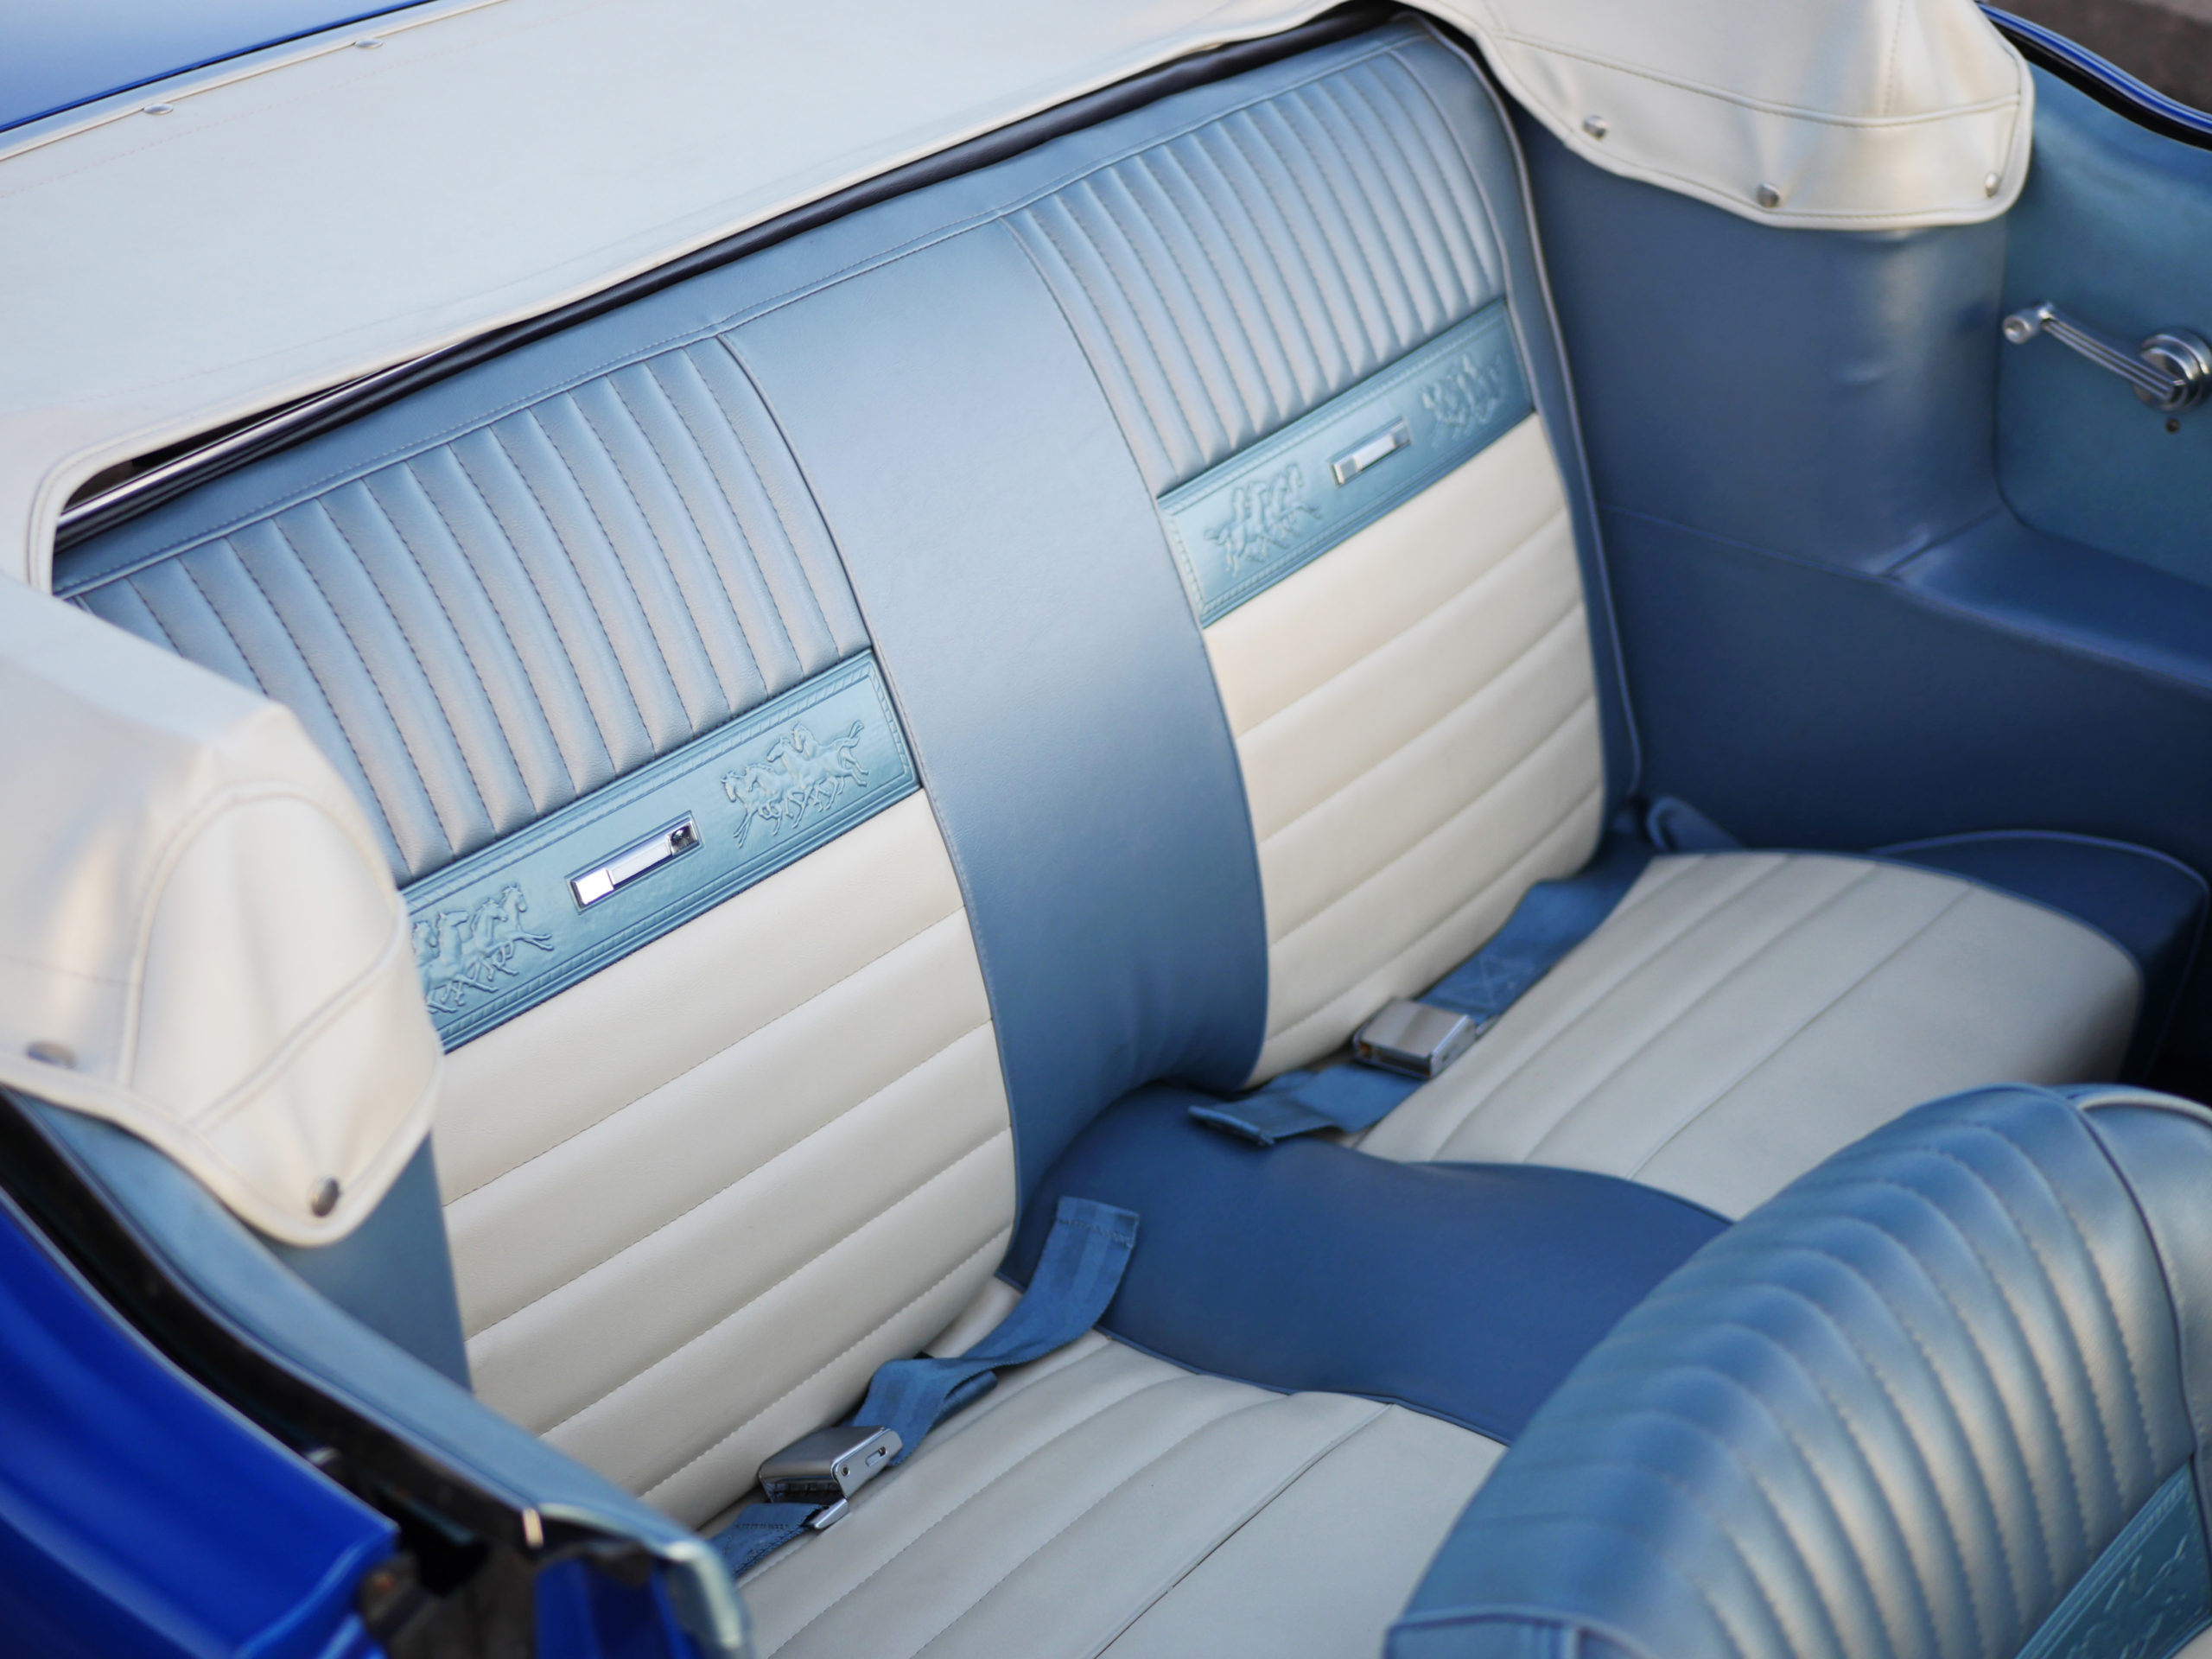 1965-mustang-interior-backseat-monterey-touring-vehicles